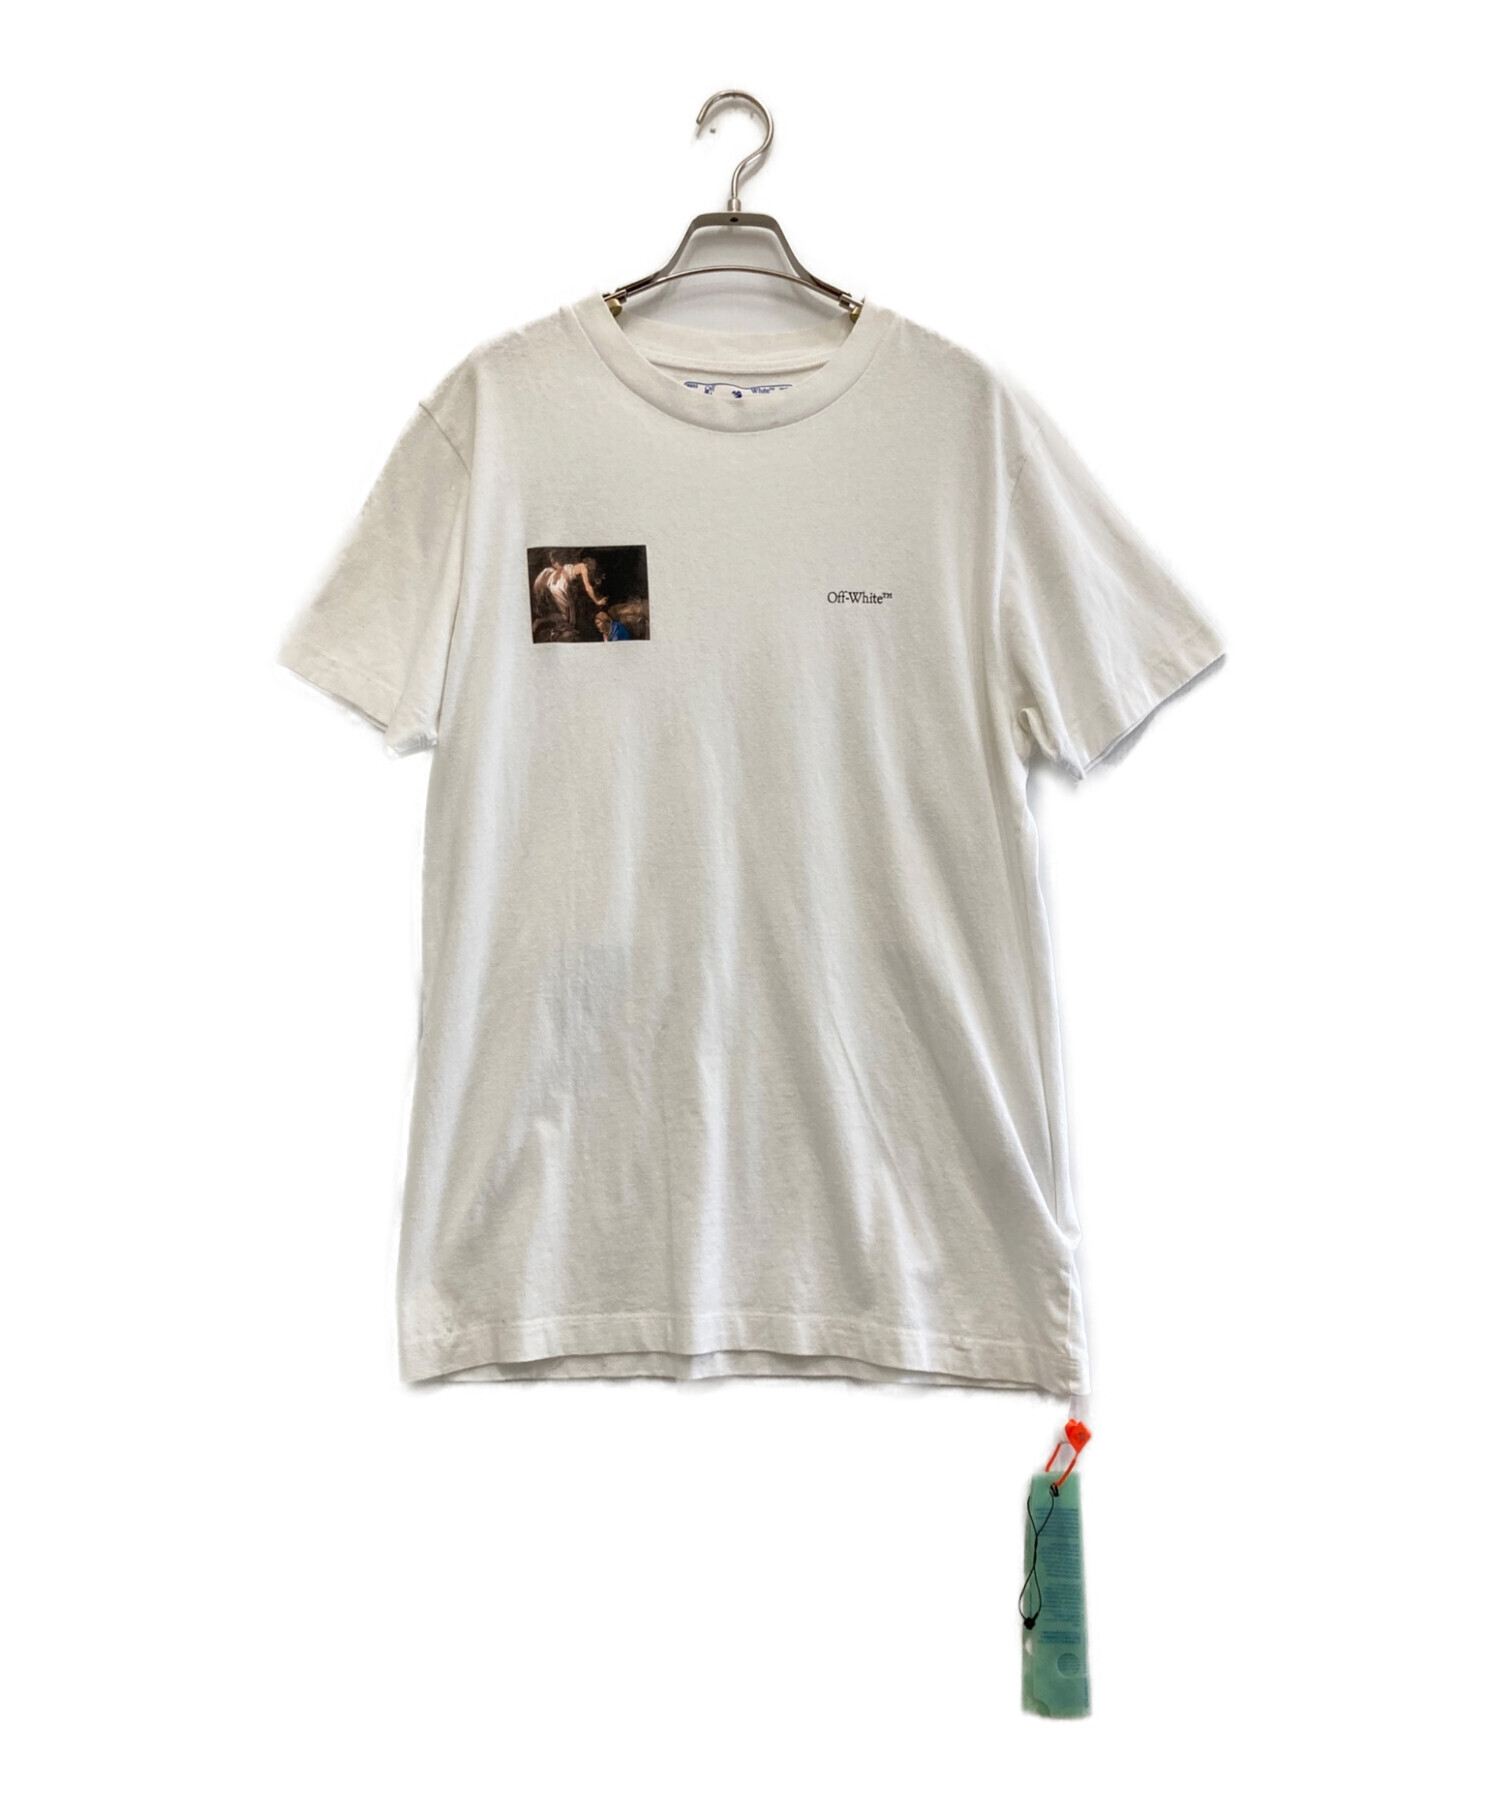 中古・古着通販】OFFWHITE (オフホワイト) Tシャツ ホワイト サイズ:M